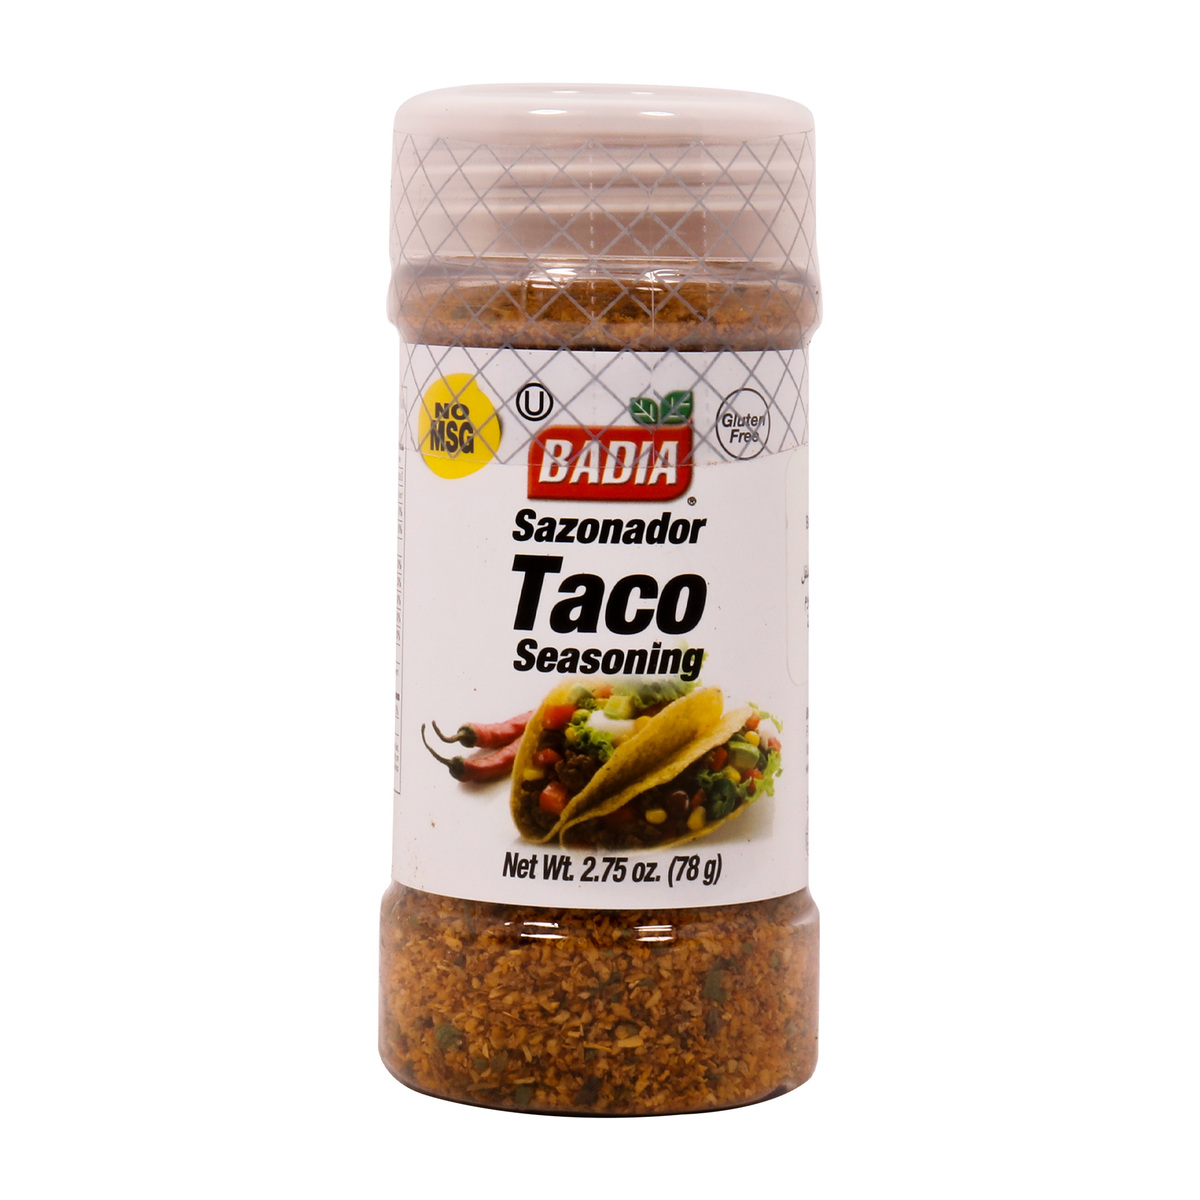 Badia Sazonador Taco Seasoning 78g